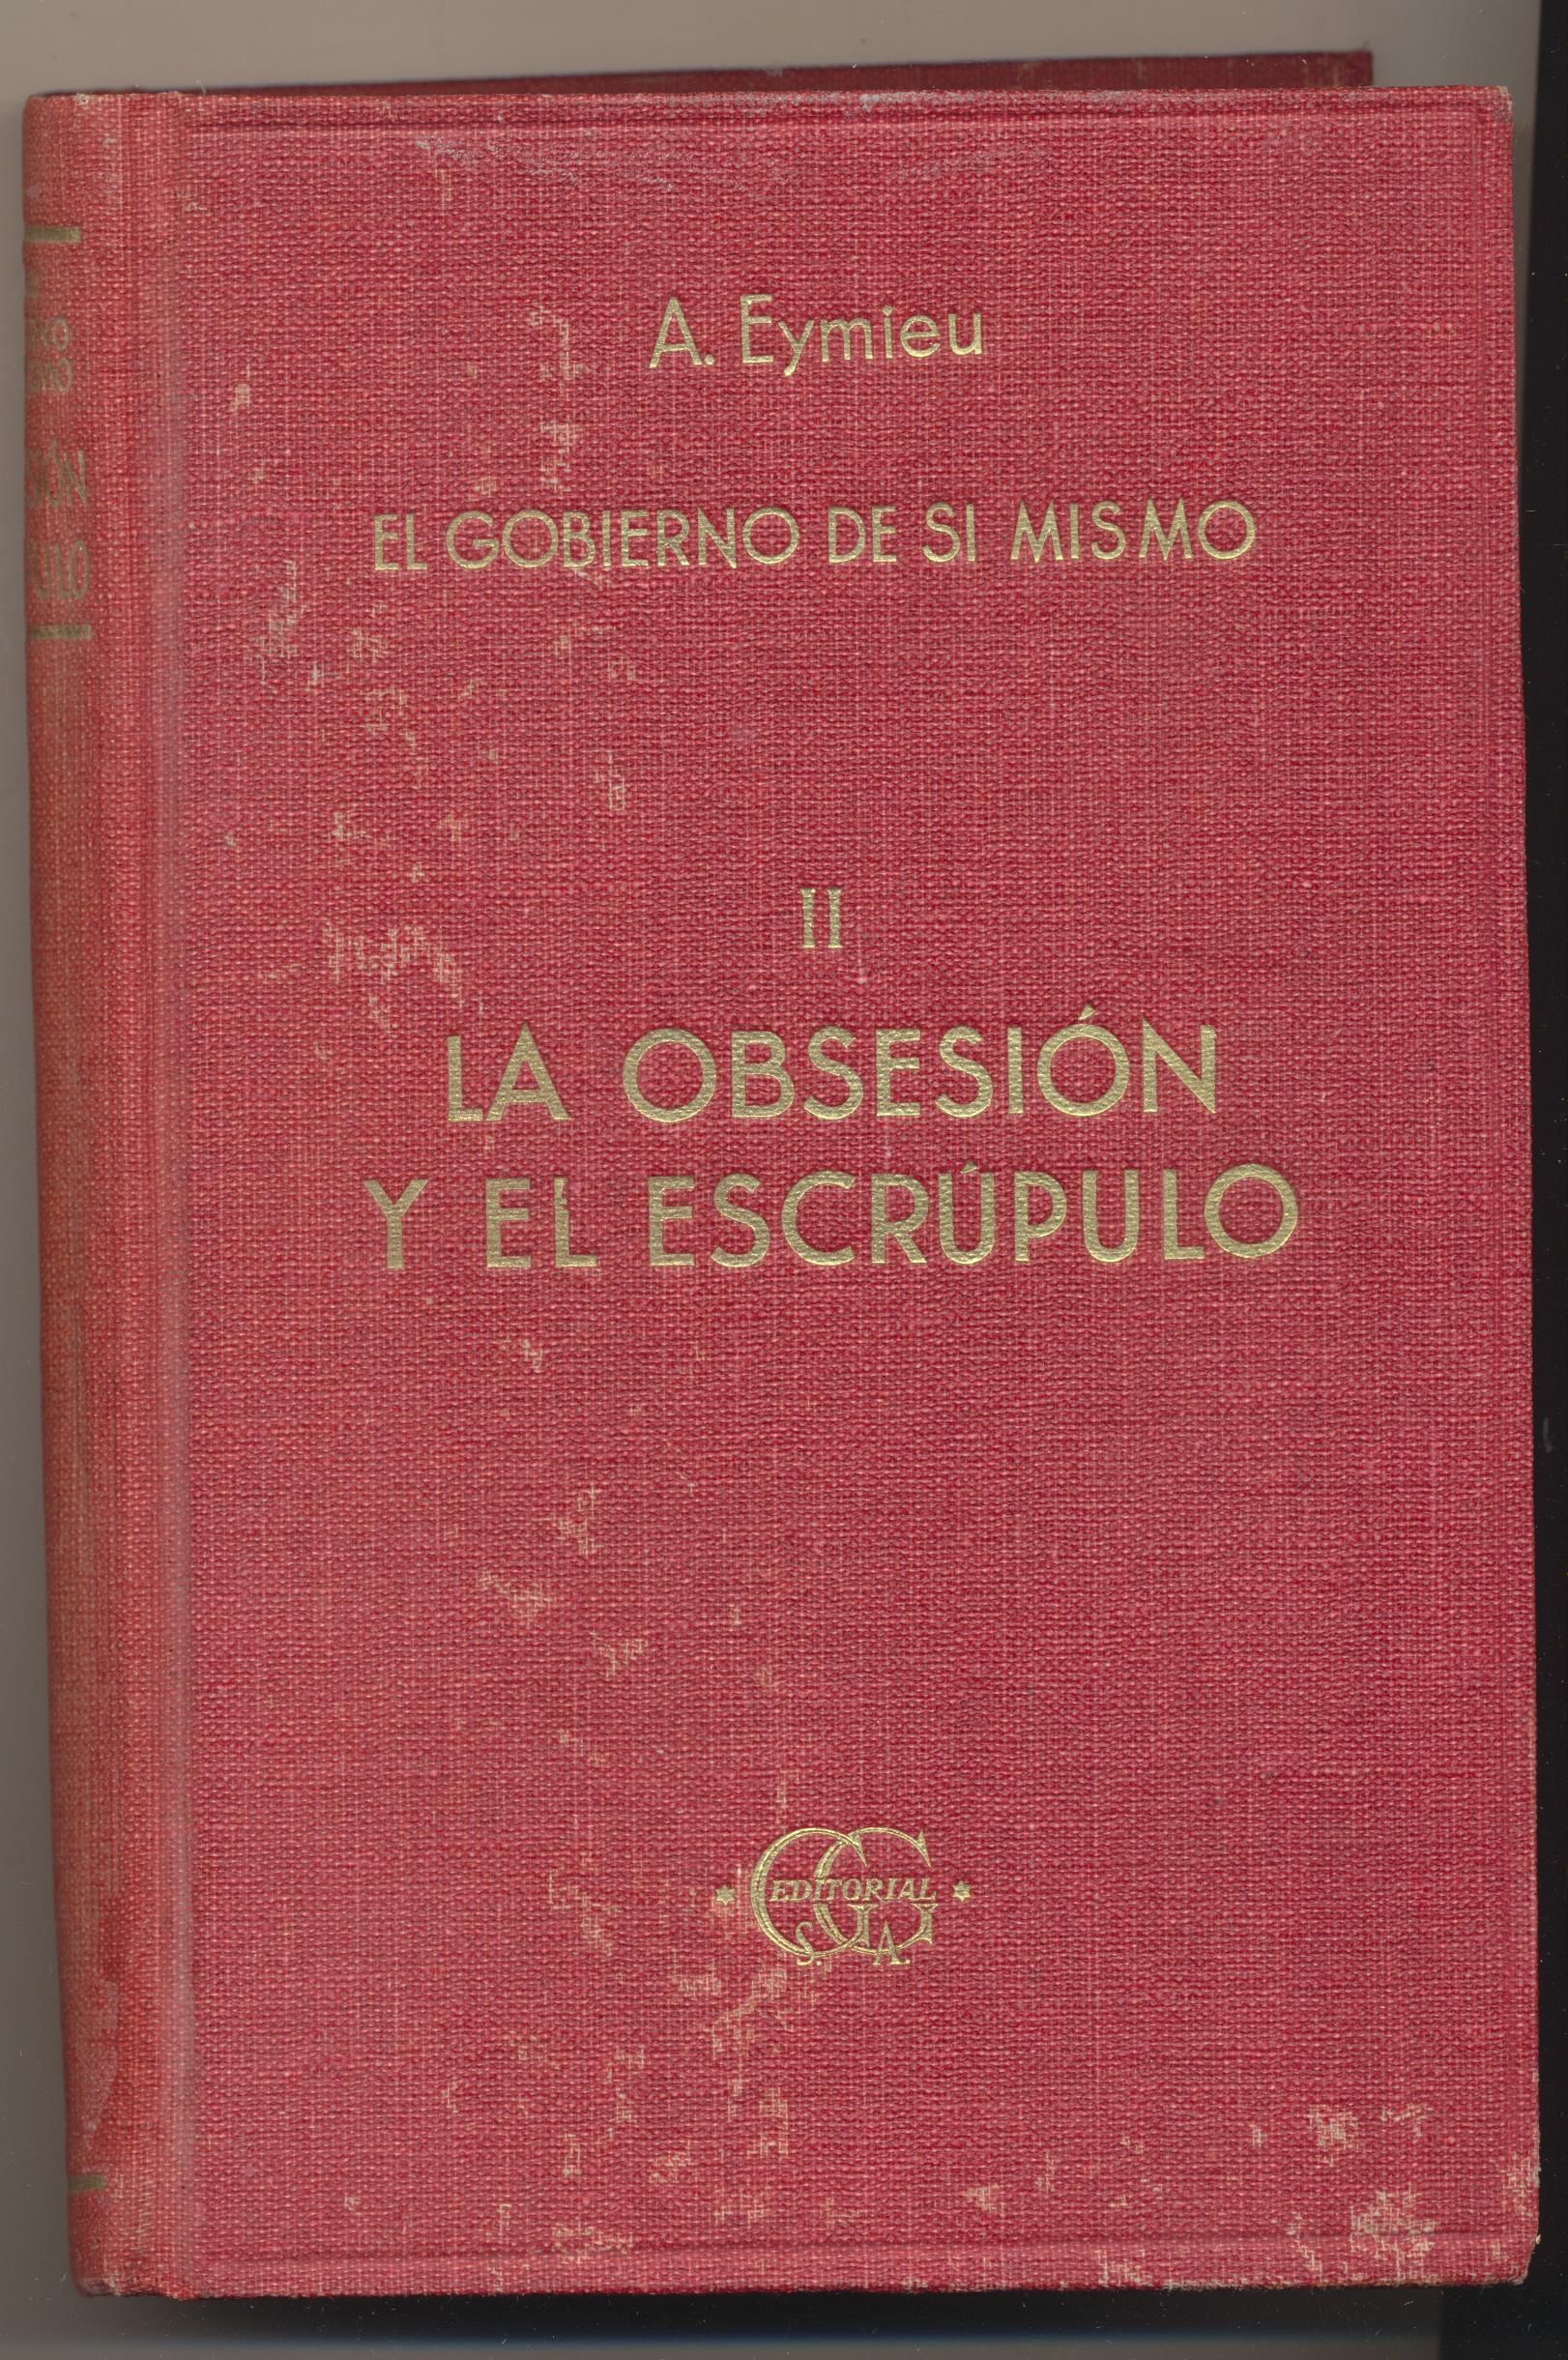 A. Aymieu. El Gobierno en si mismo II, La Obsesión y el Escrúpulo. Gustavo Gili 1932